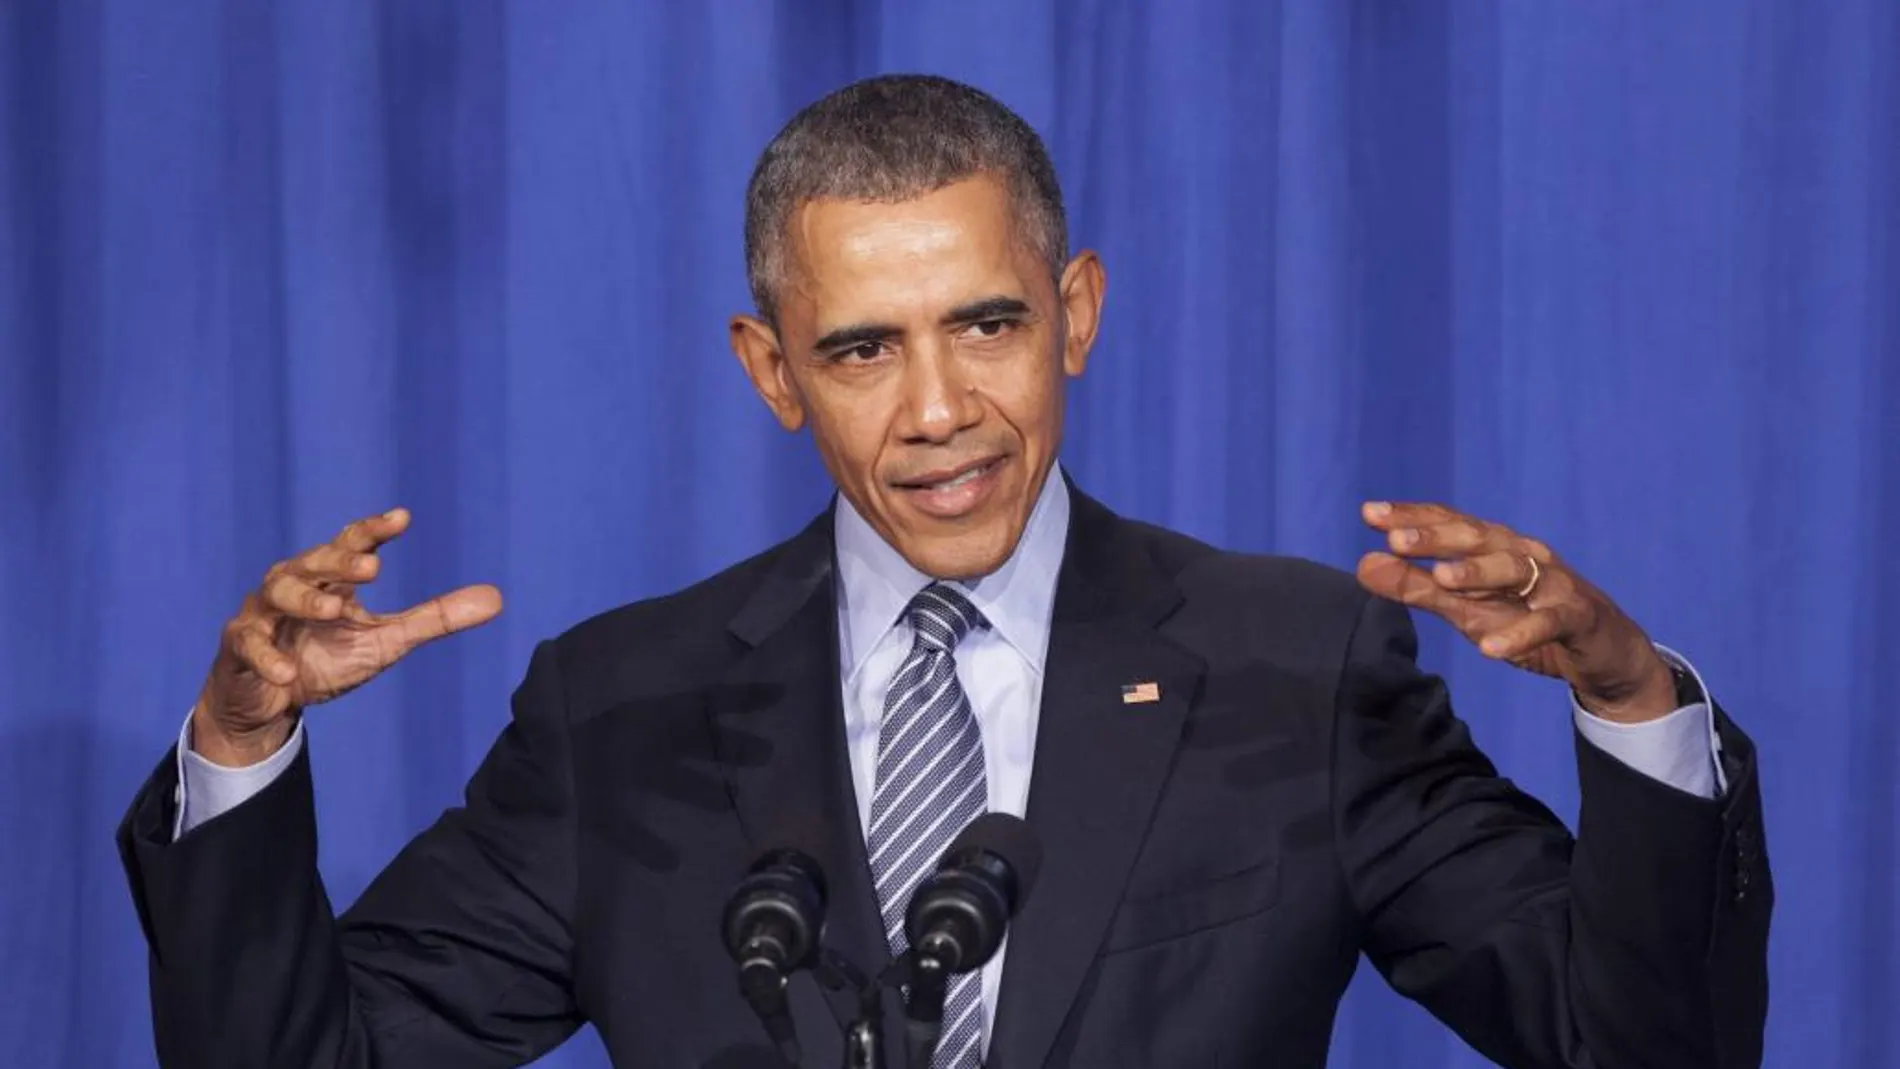 El presidente de los Estados Unidos Barack Obama pronuncia un discurso durante la cena de Organizing for Action el lunes